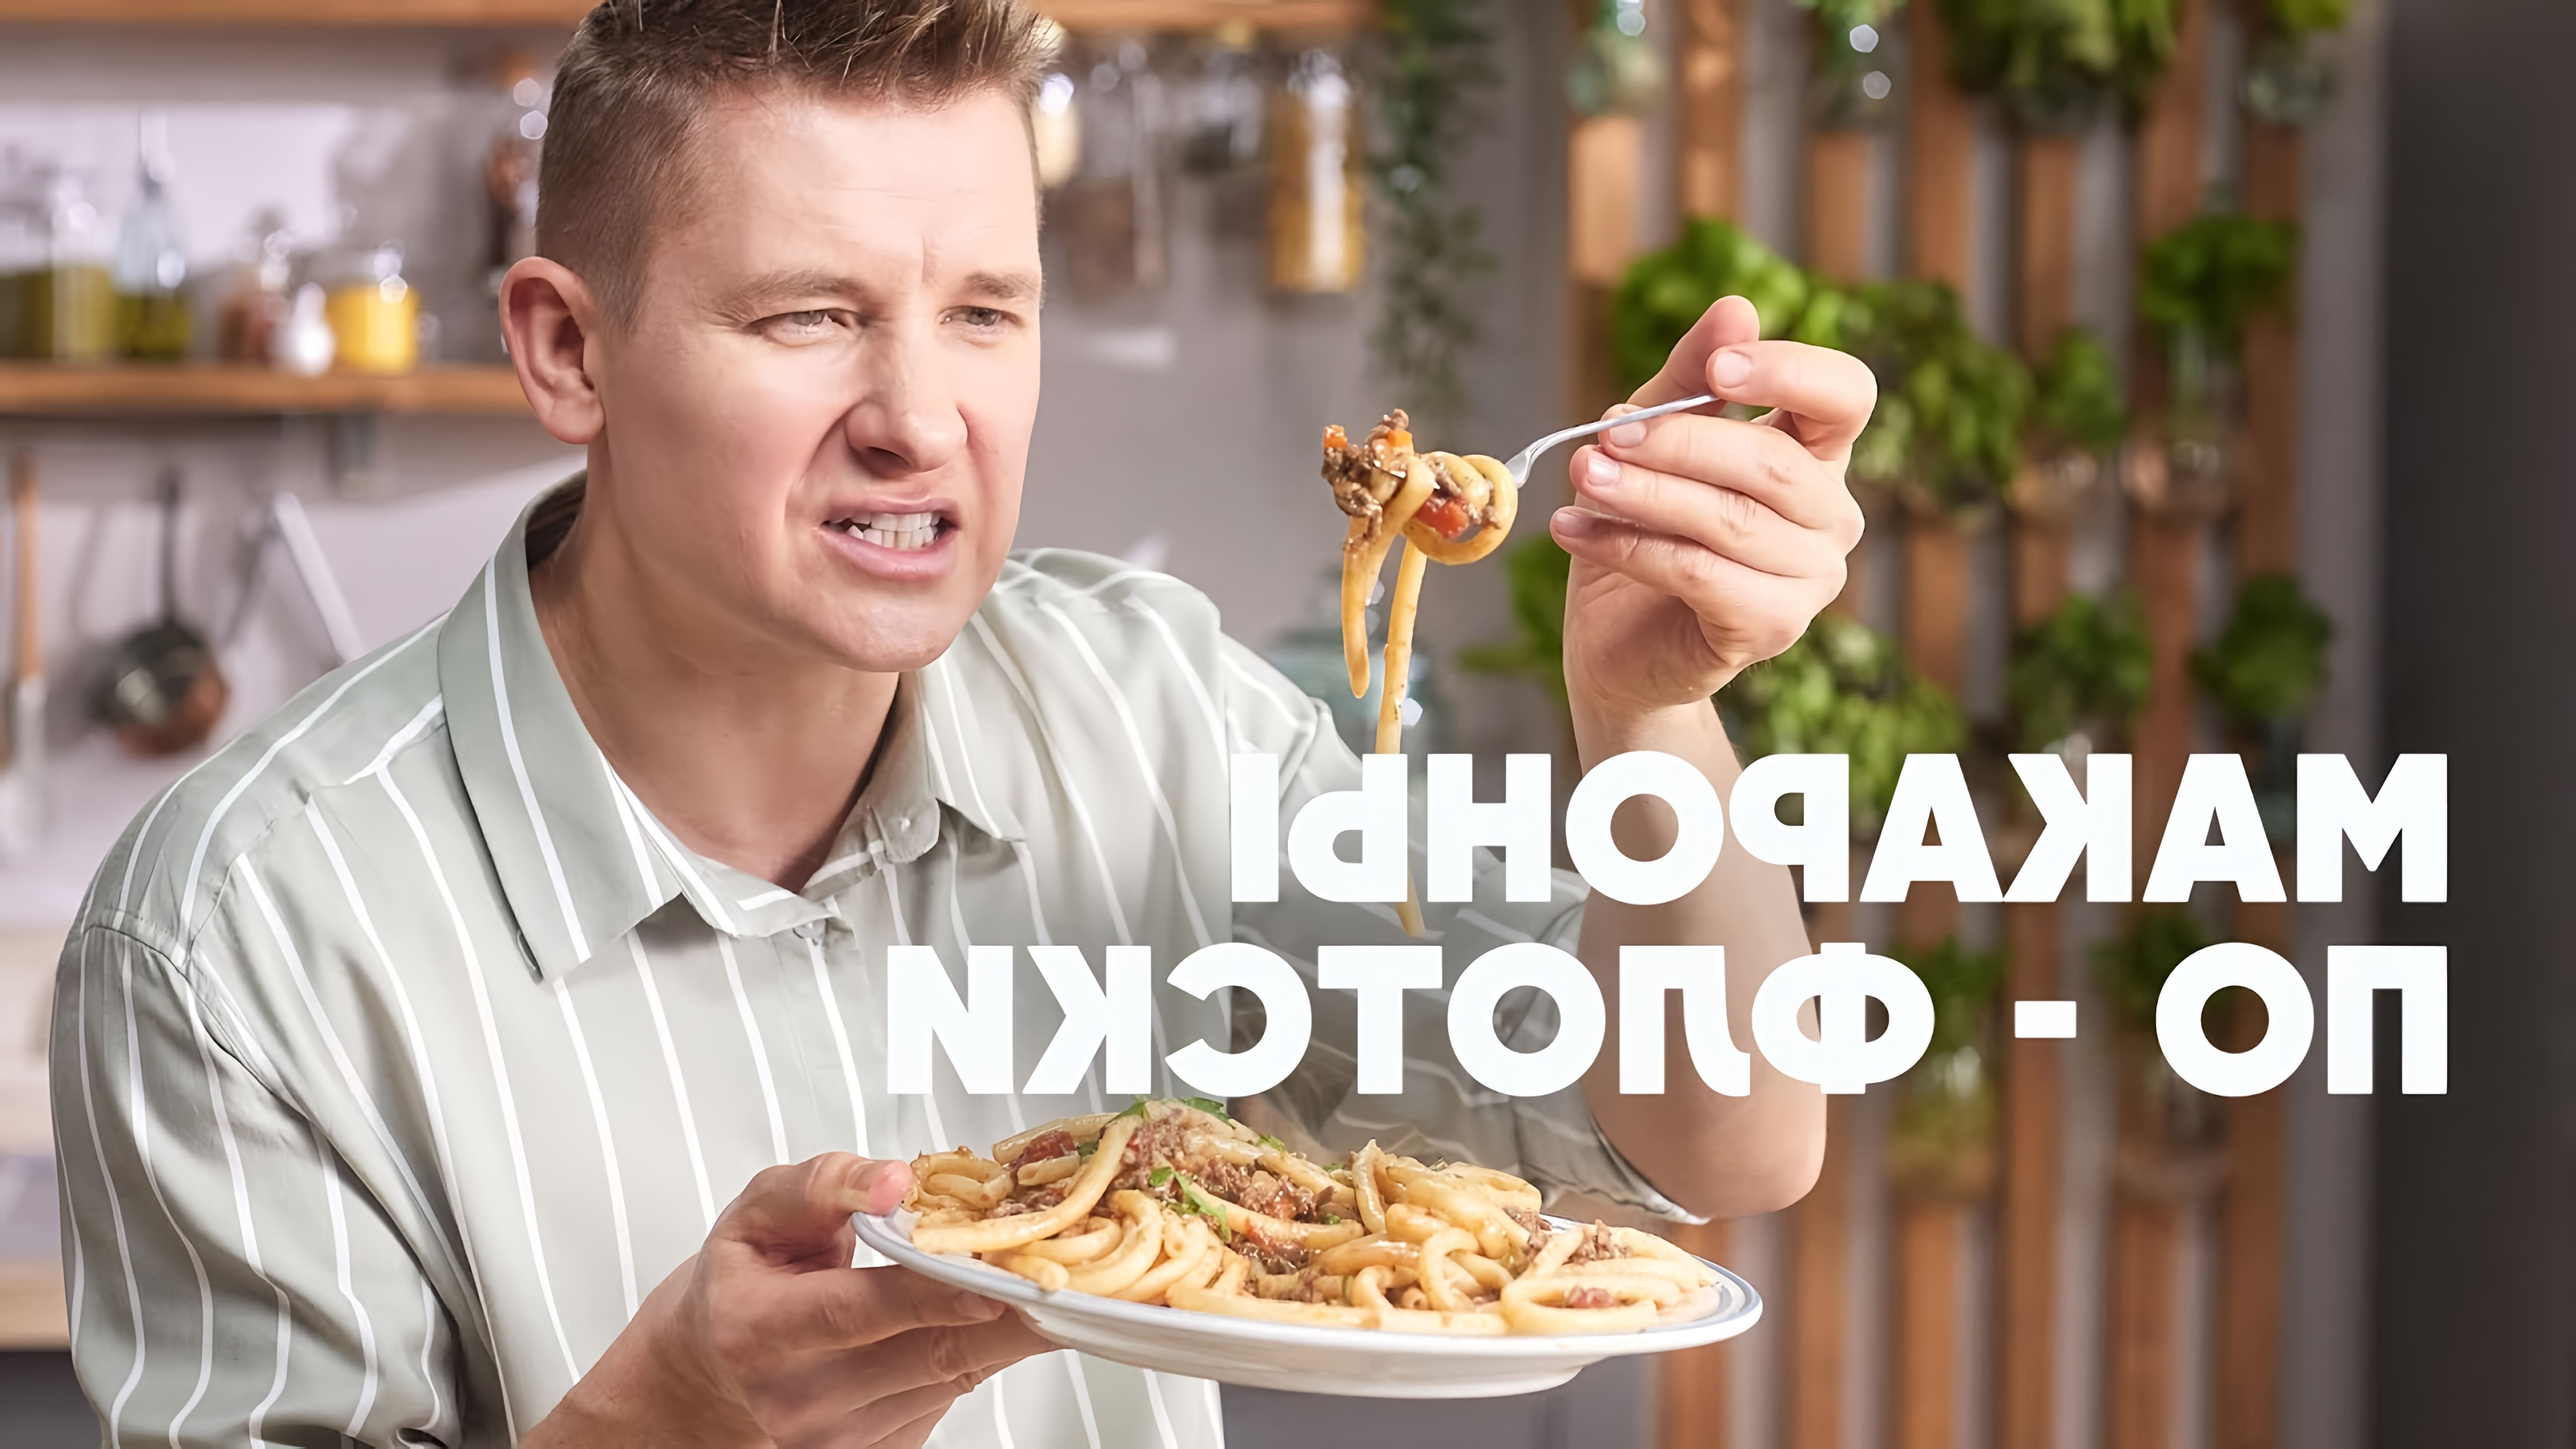 В этом видео шеф-повар Белькович показывает, как приготовить макароны по-флотски